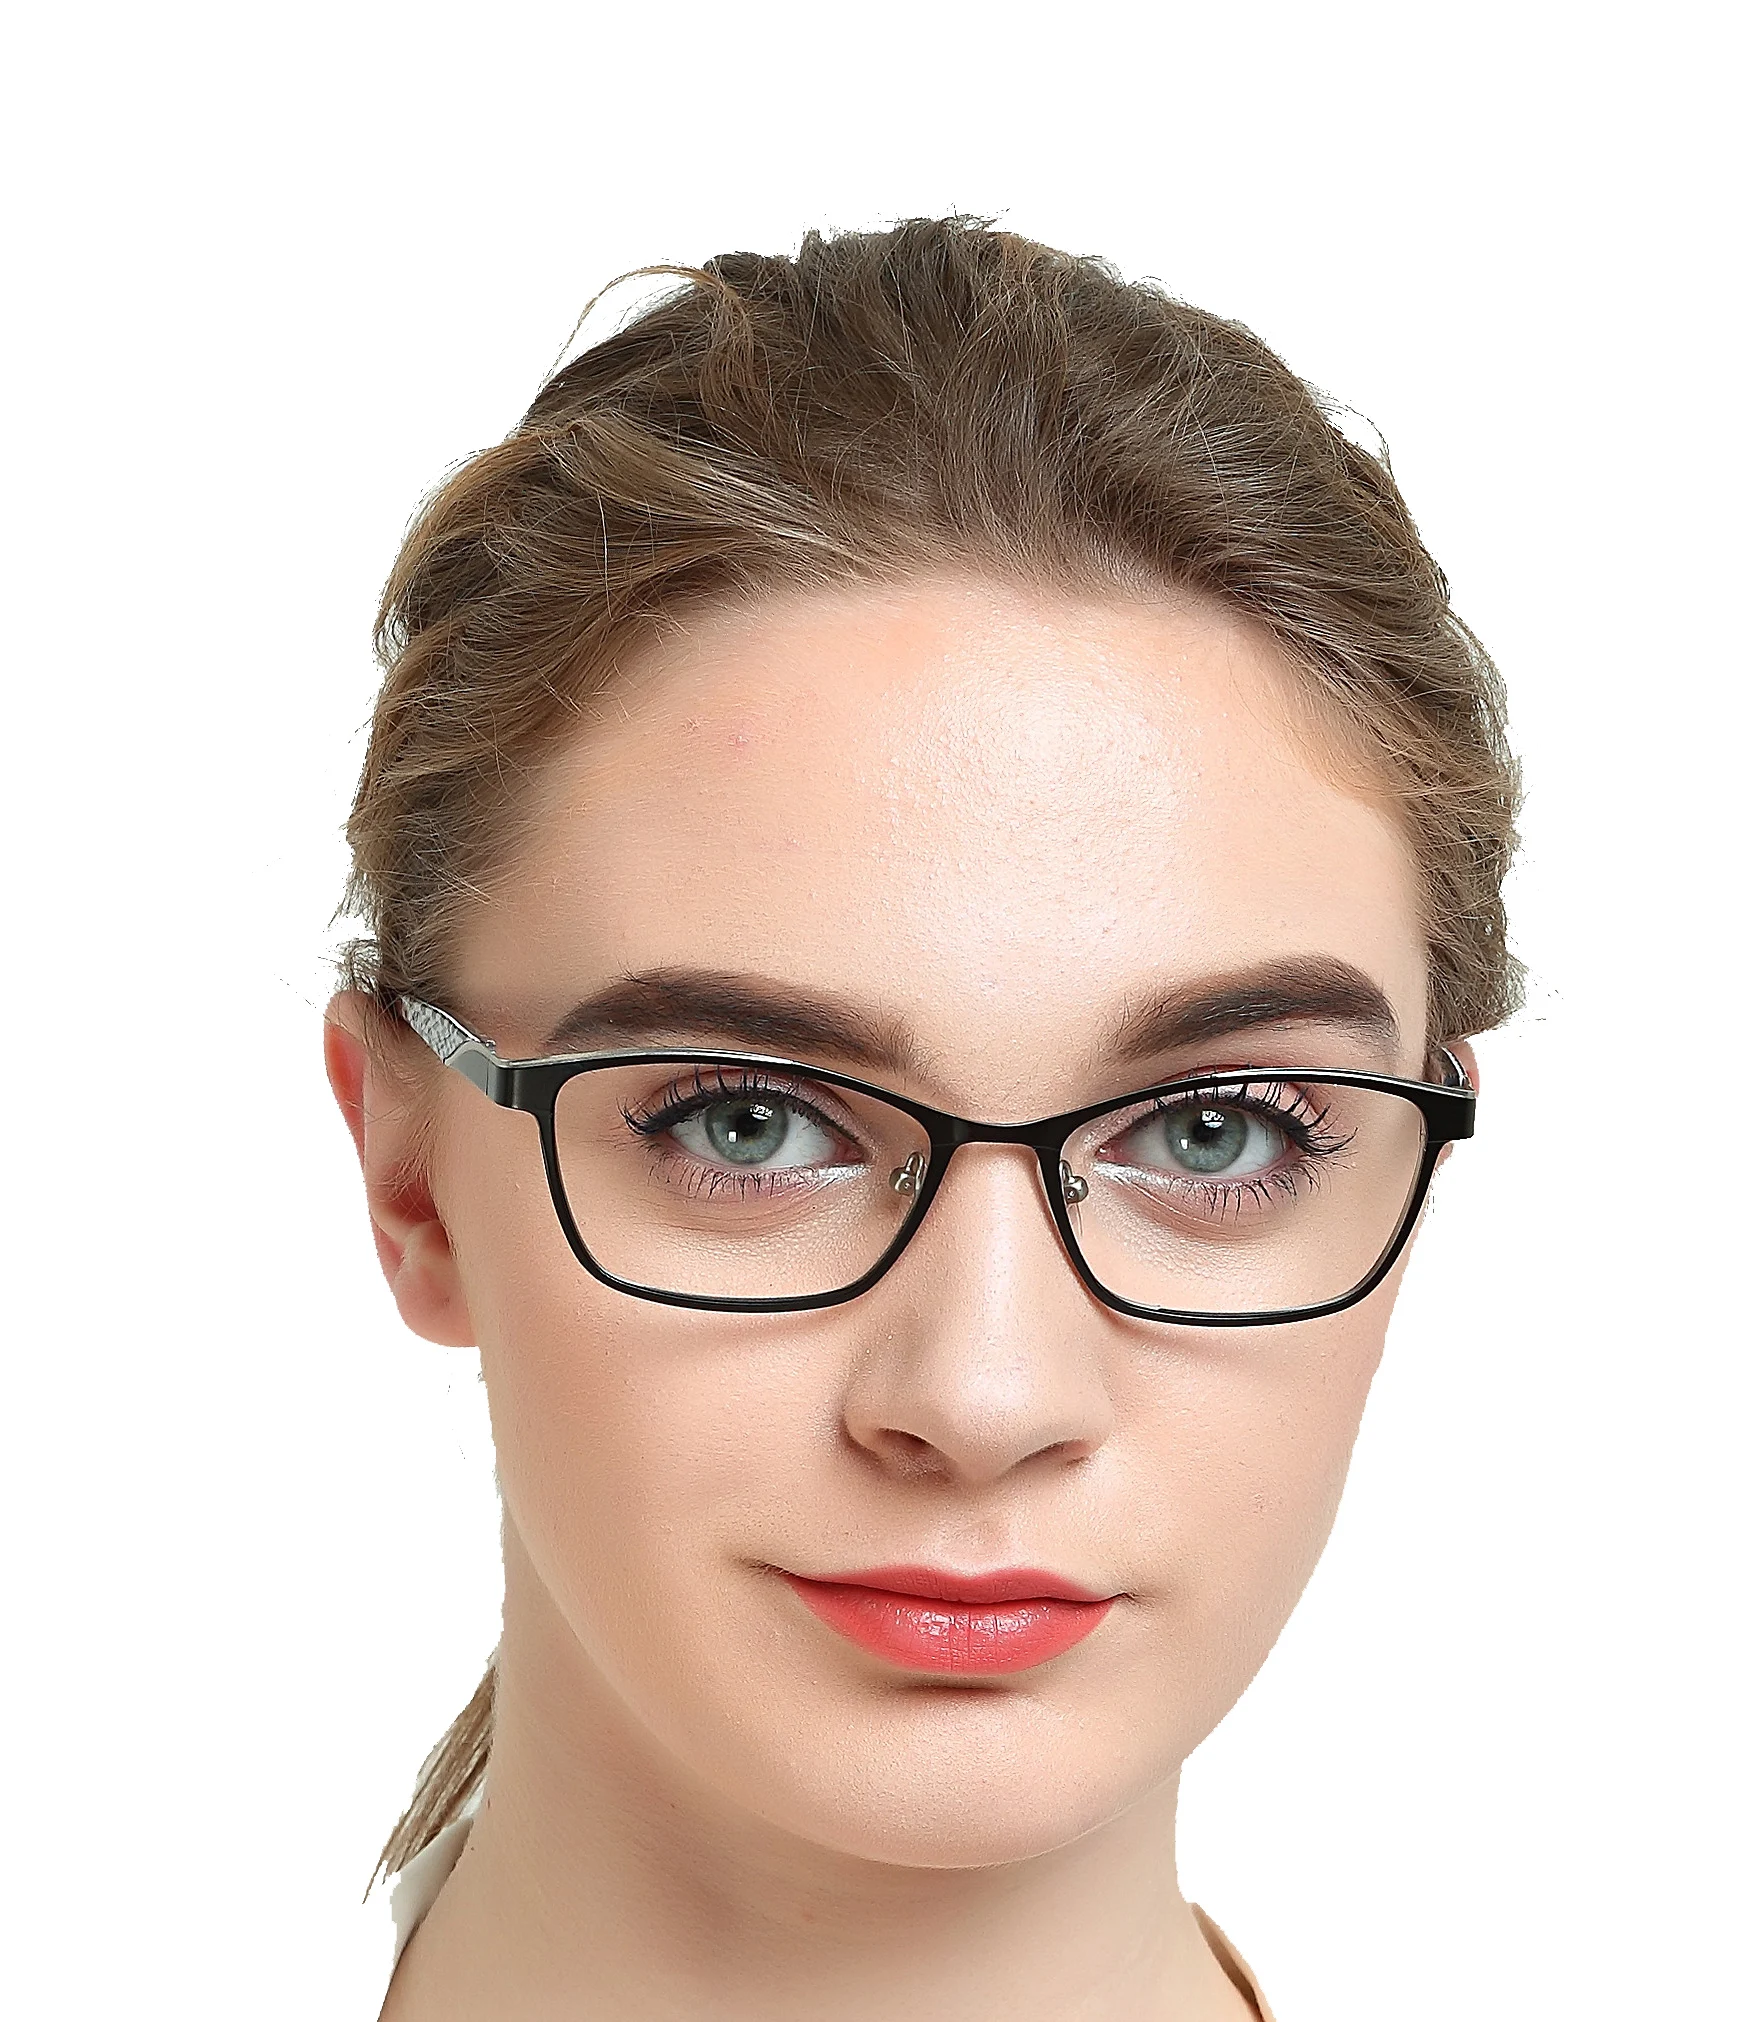 De Gafas Para Mujer,Con Bisagra De Primavera - Buy Gafas De Moda,Últimas Tendencias Gafas De Marcos,Nueva Moda De Gafas Product on Alibaba.com